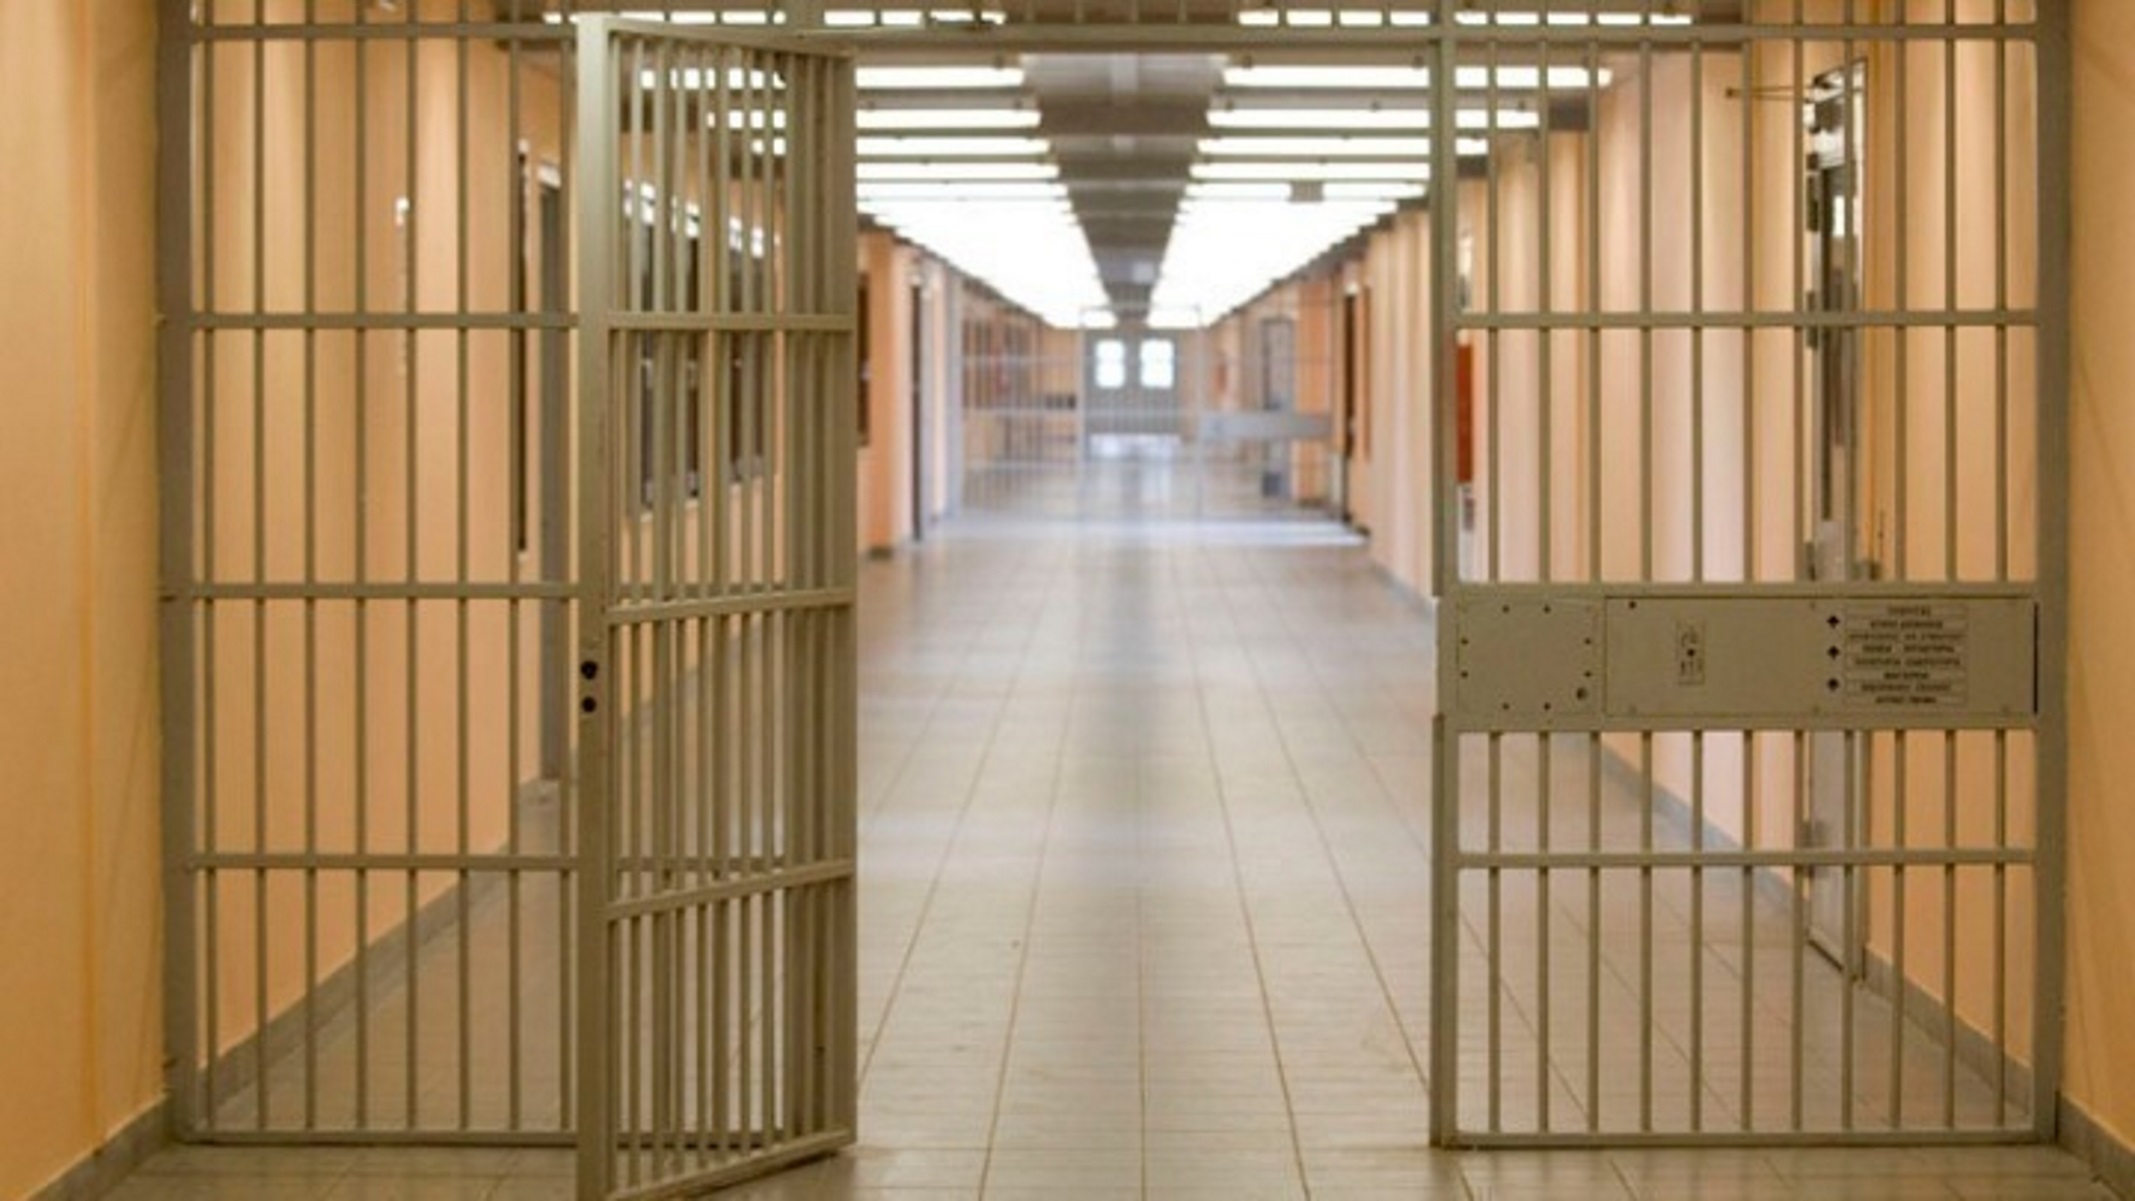 Χανιά: Μυστηριώδης θάνατος στις φυλακές – Κρατούμενος για κλοπές βρέθηκε νεκρός στο κελί του